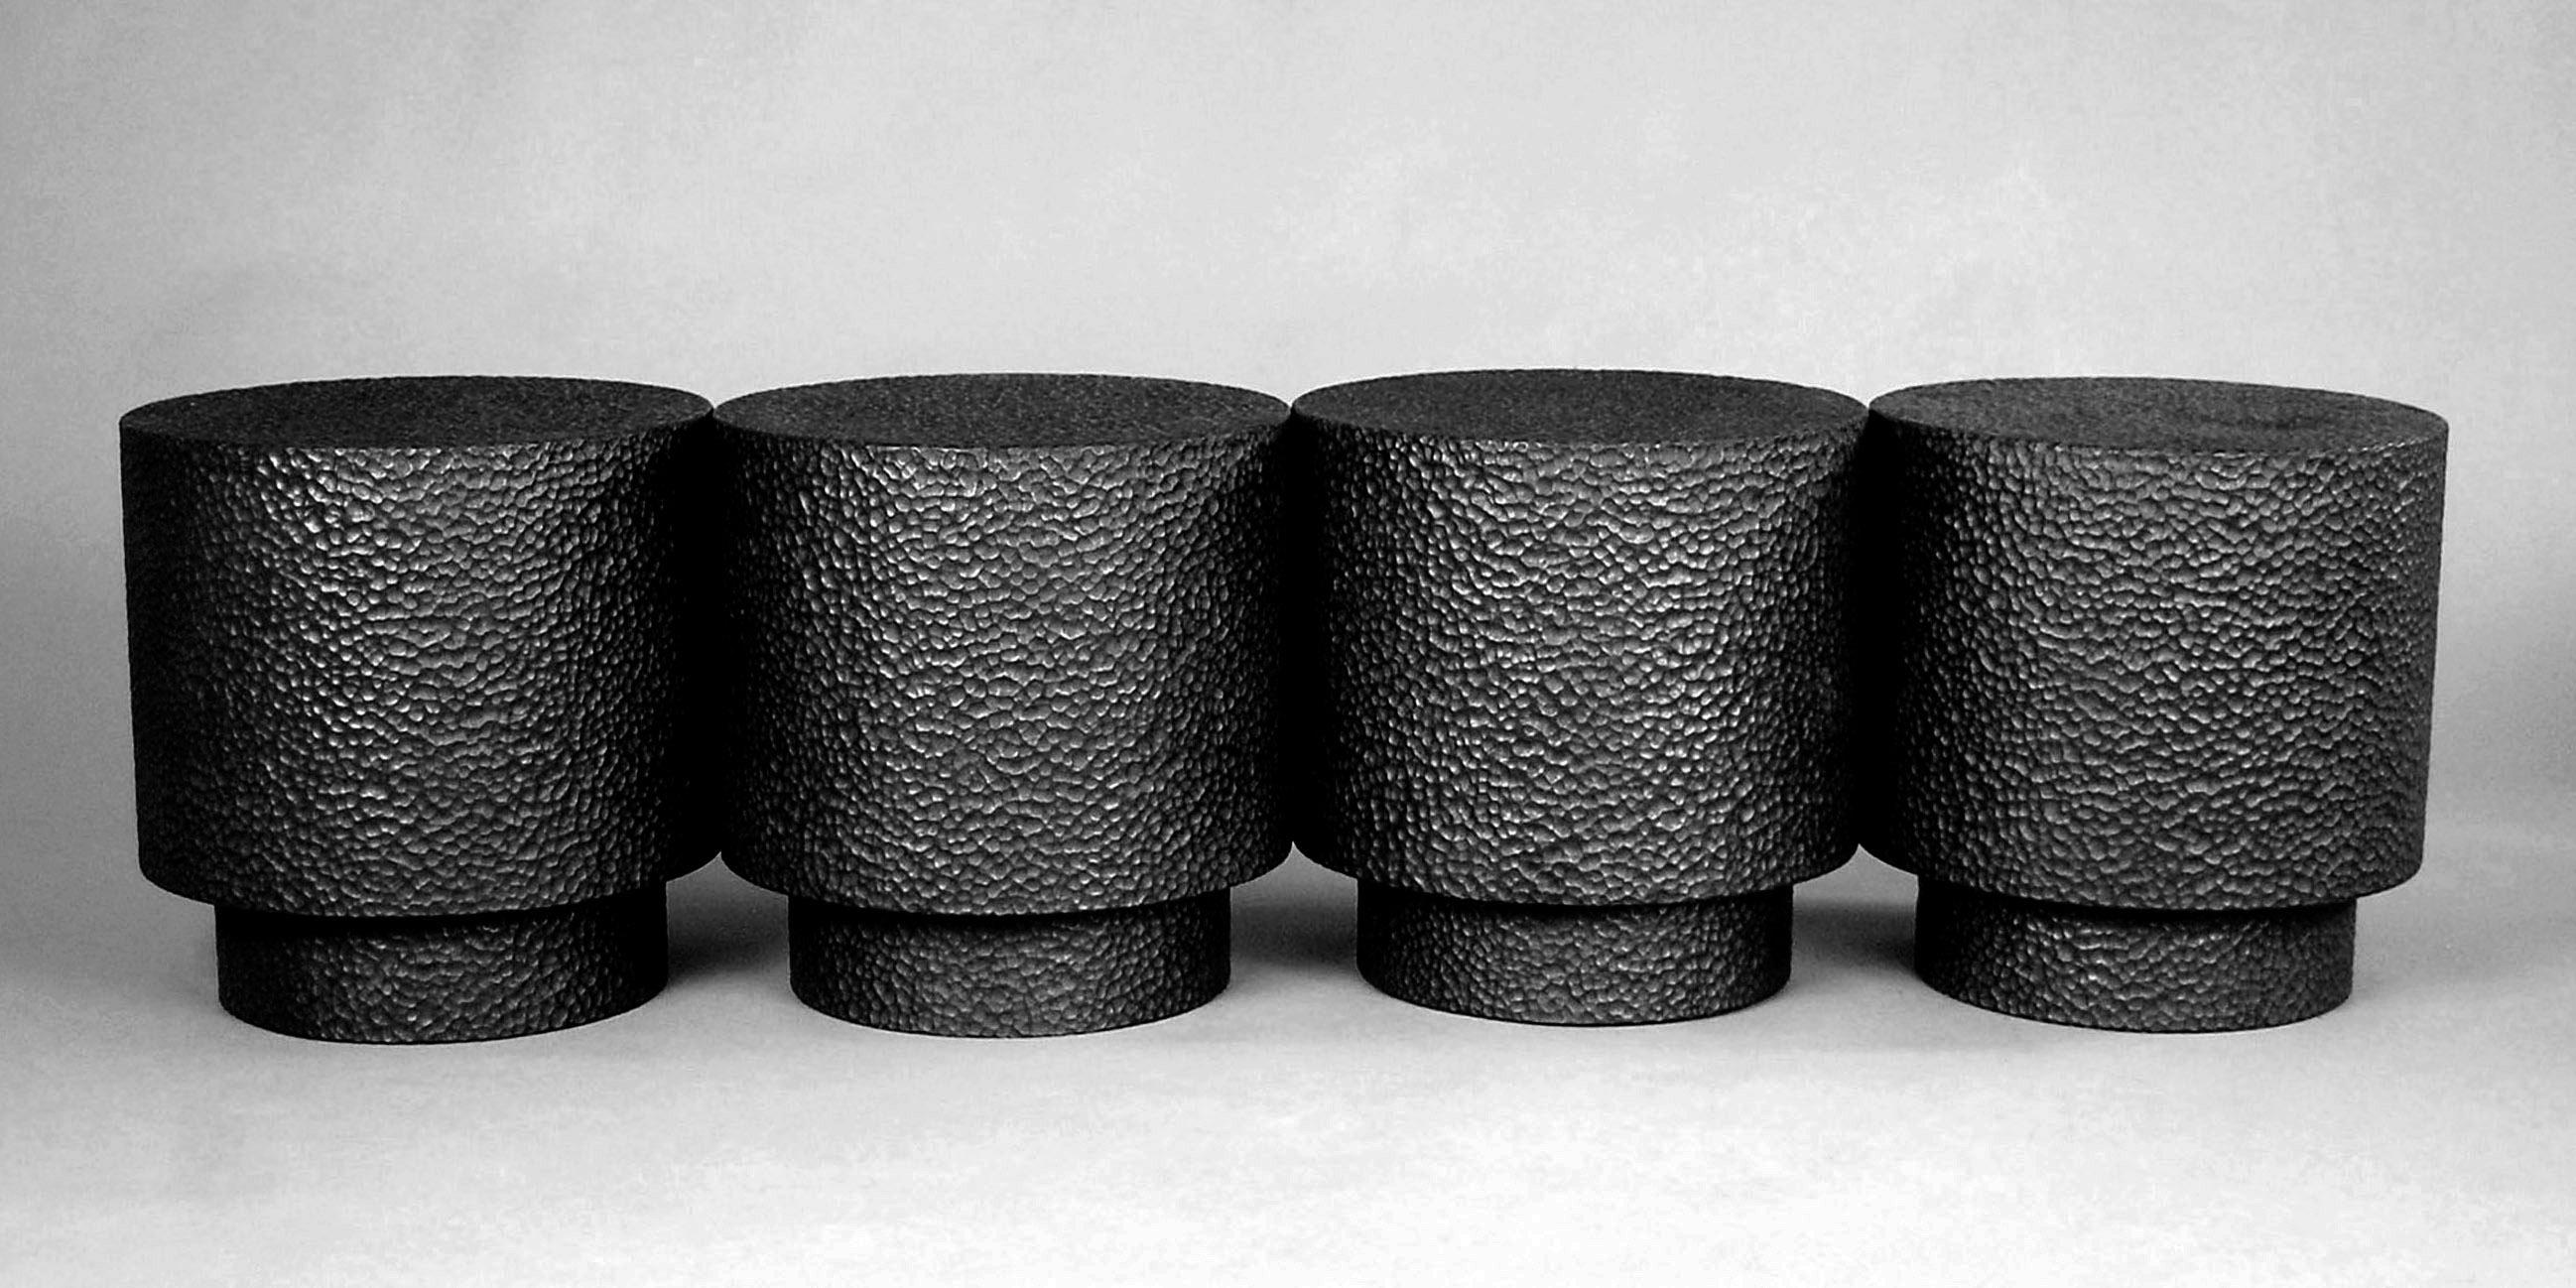 Banc de tambour pour 4 personnes par John Eric Byers
Dimensions : D41 x W163 x H41 cm
MATERIAL : sculpté + noirci + érable

Toutes les œuvres sont réalisées individuellement à la main sur commande.

John Eric Byers crée des pièces d'inspiration